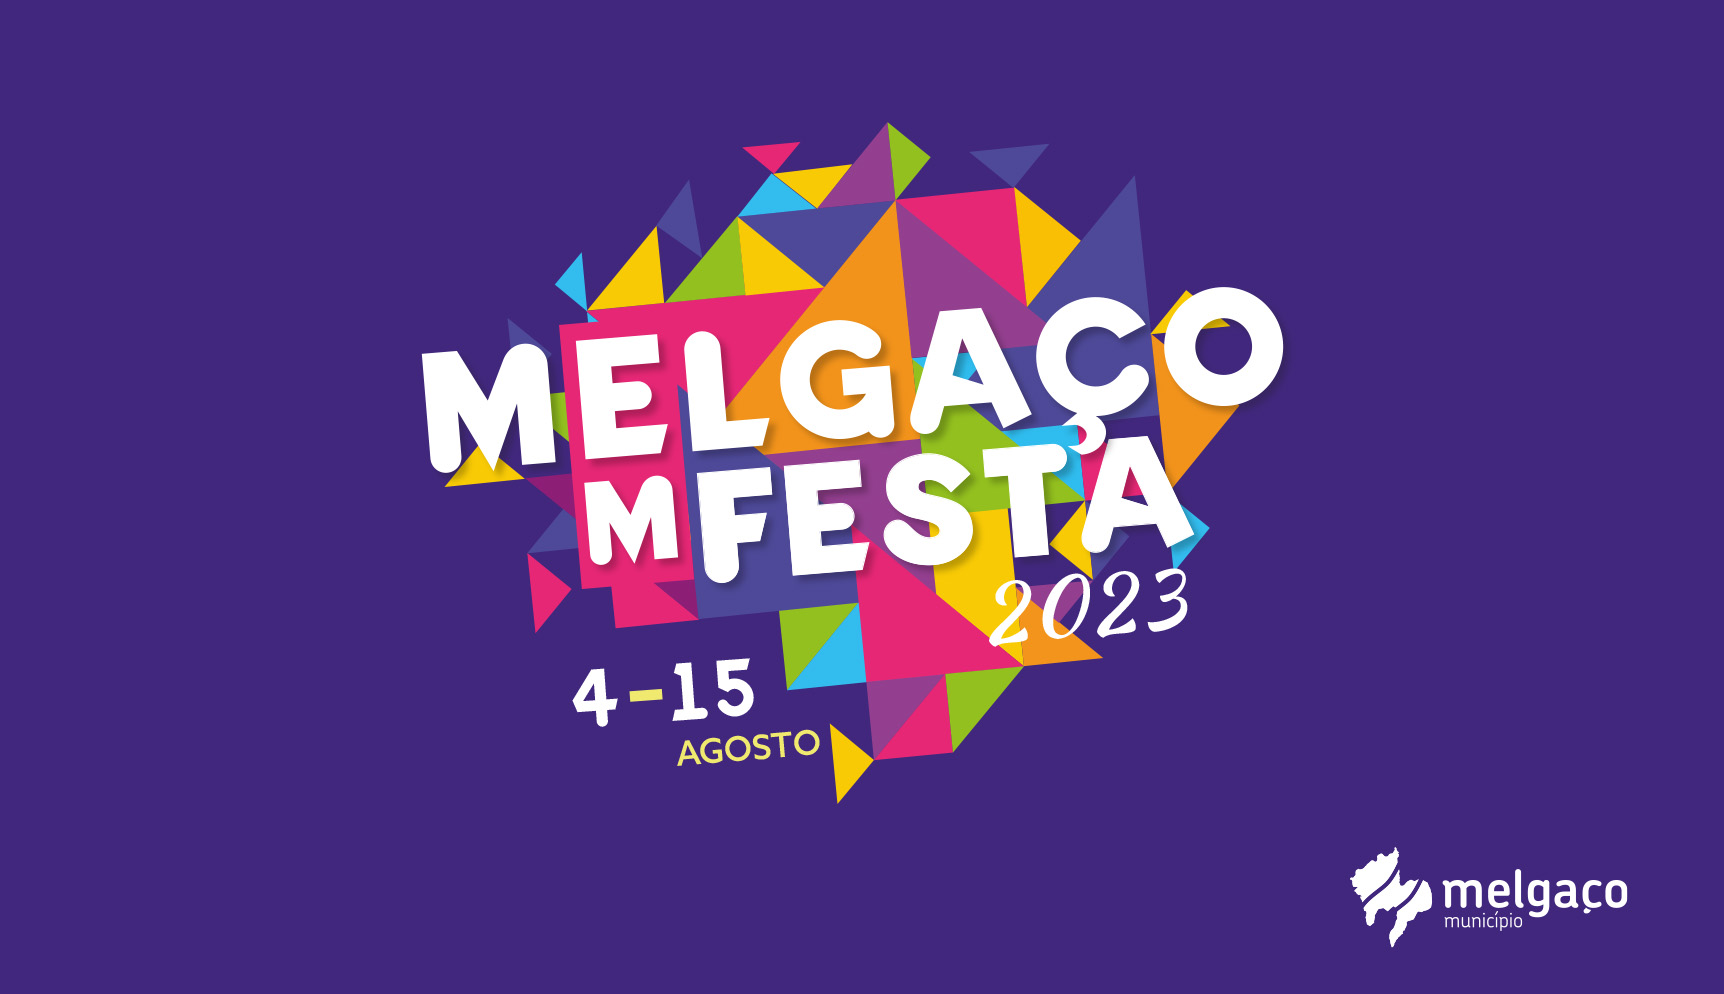 MELGAÇO EM FESTA || 2023